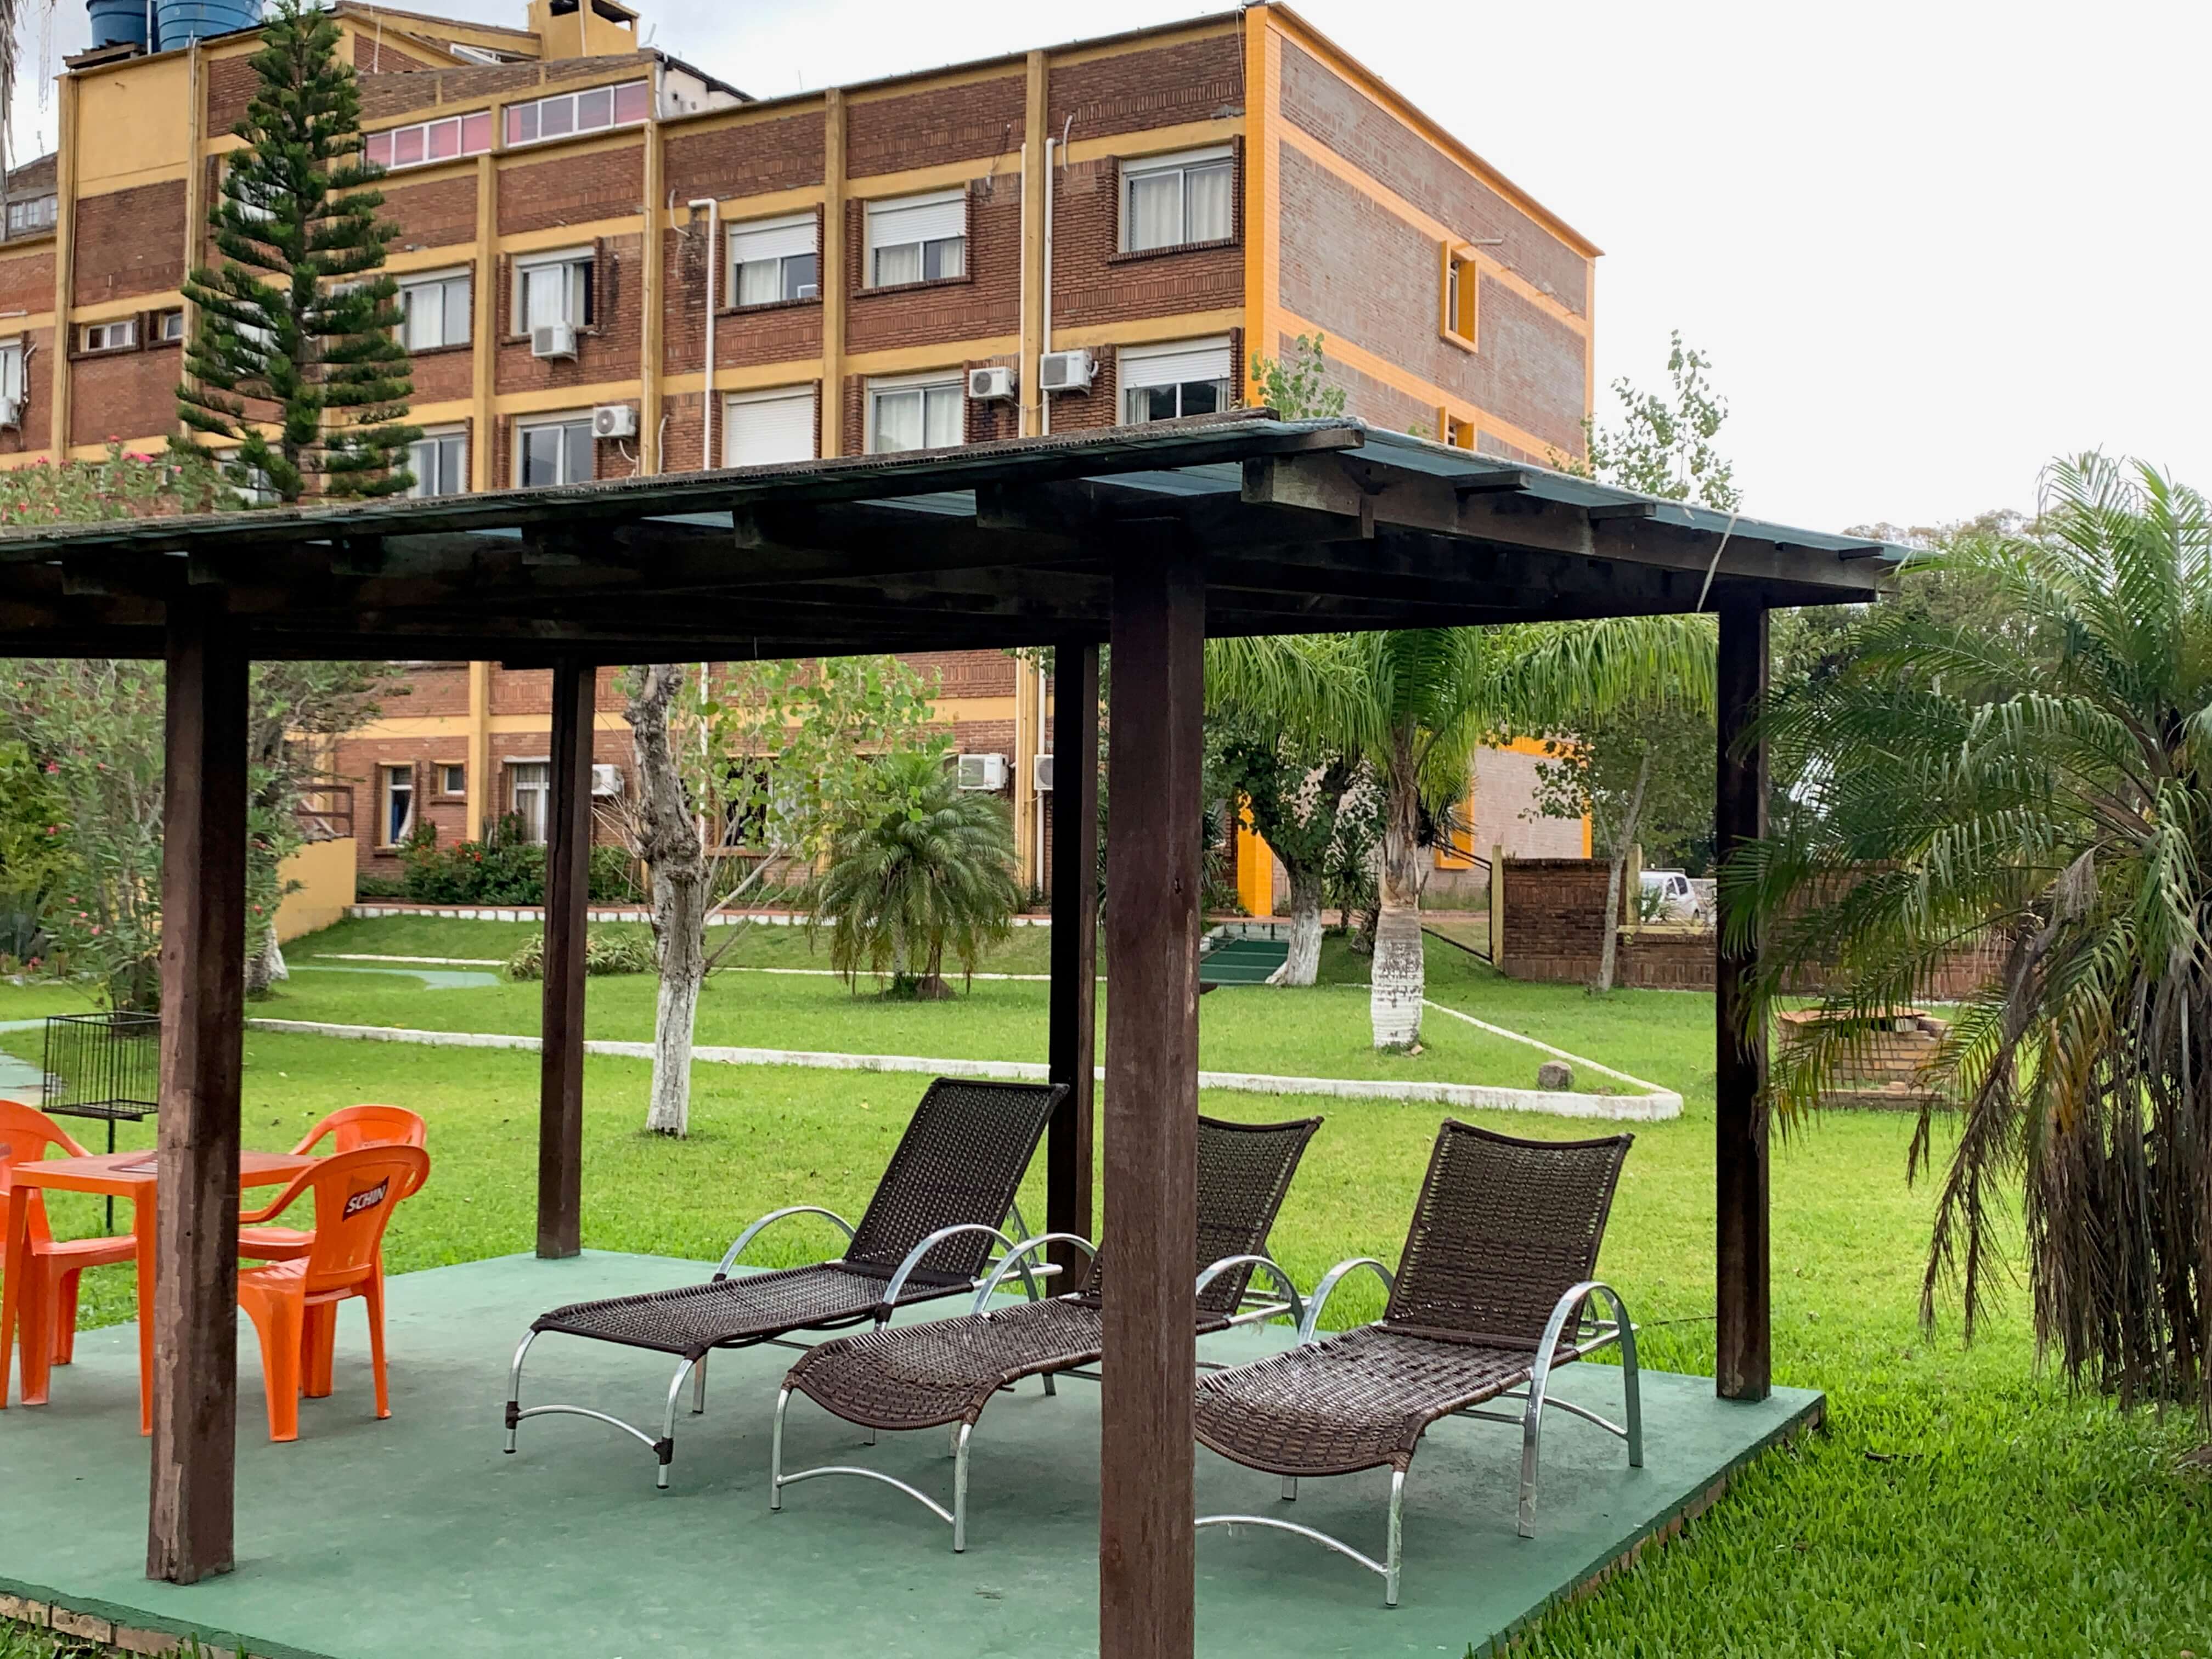 Parte externa do hotel Bertelli, com pergolado, cadeiras, árvores e área verde